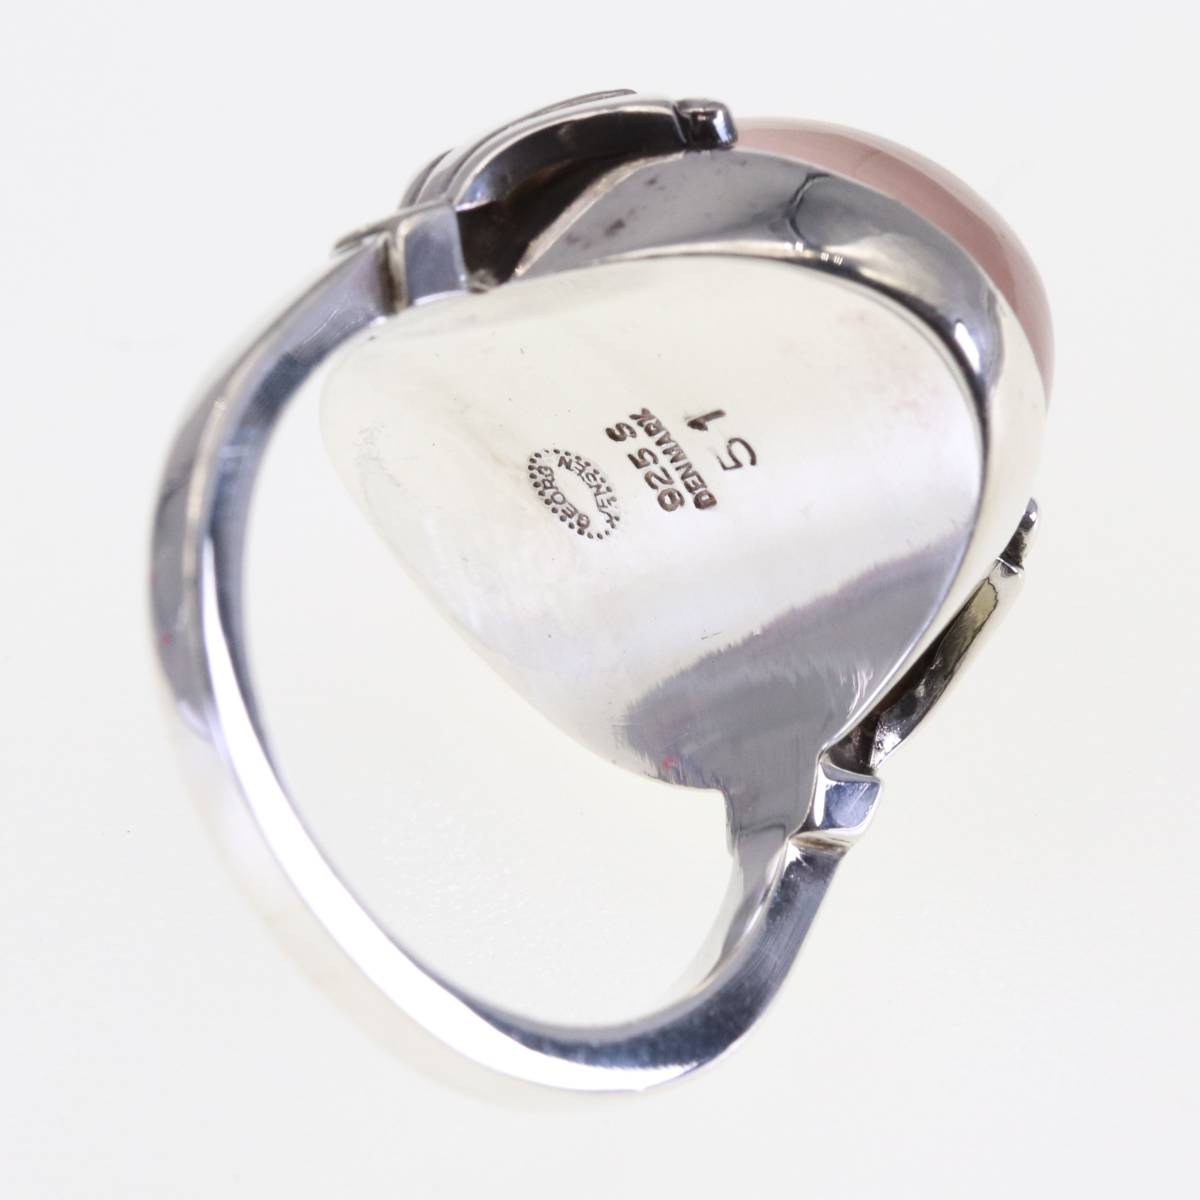  George Jensen 51 кольцо rose кварц кольцо натуральный камень розовый Georg Jensen DENMARK